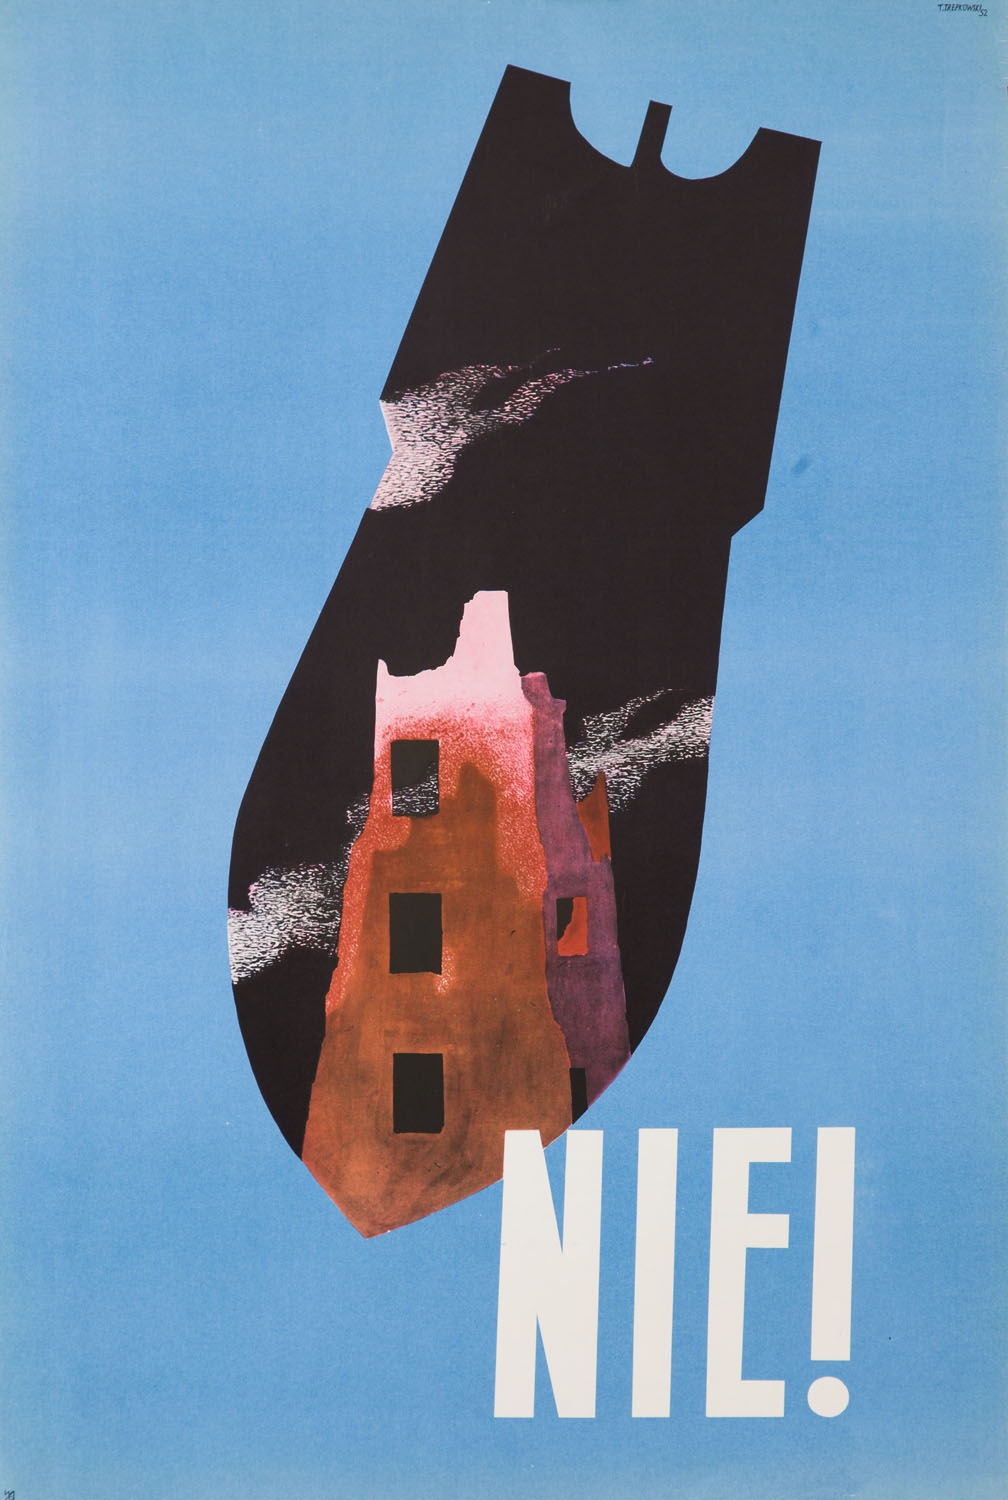 Plakat "Nie!" by Tadeusz Trepkowski, 1952